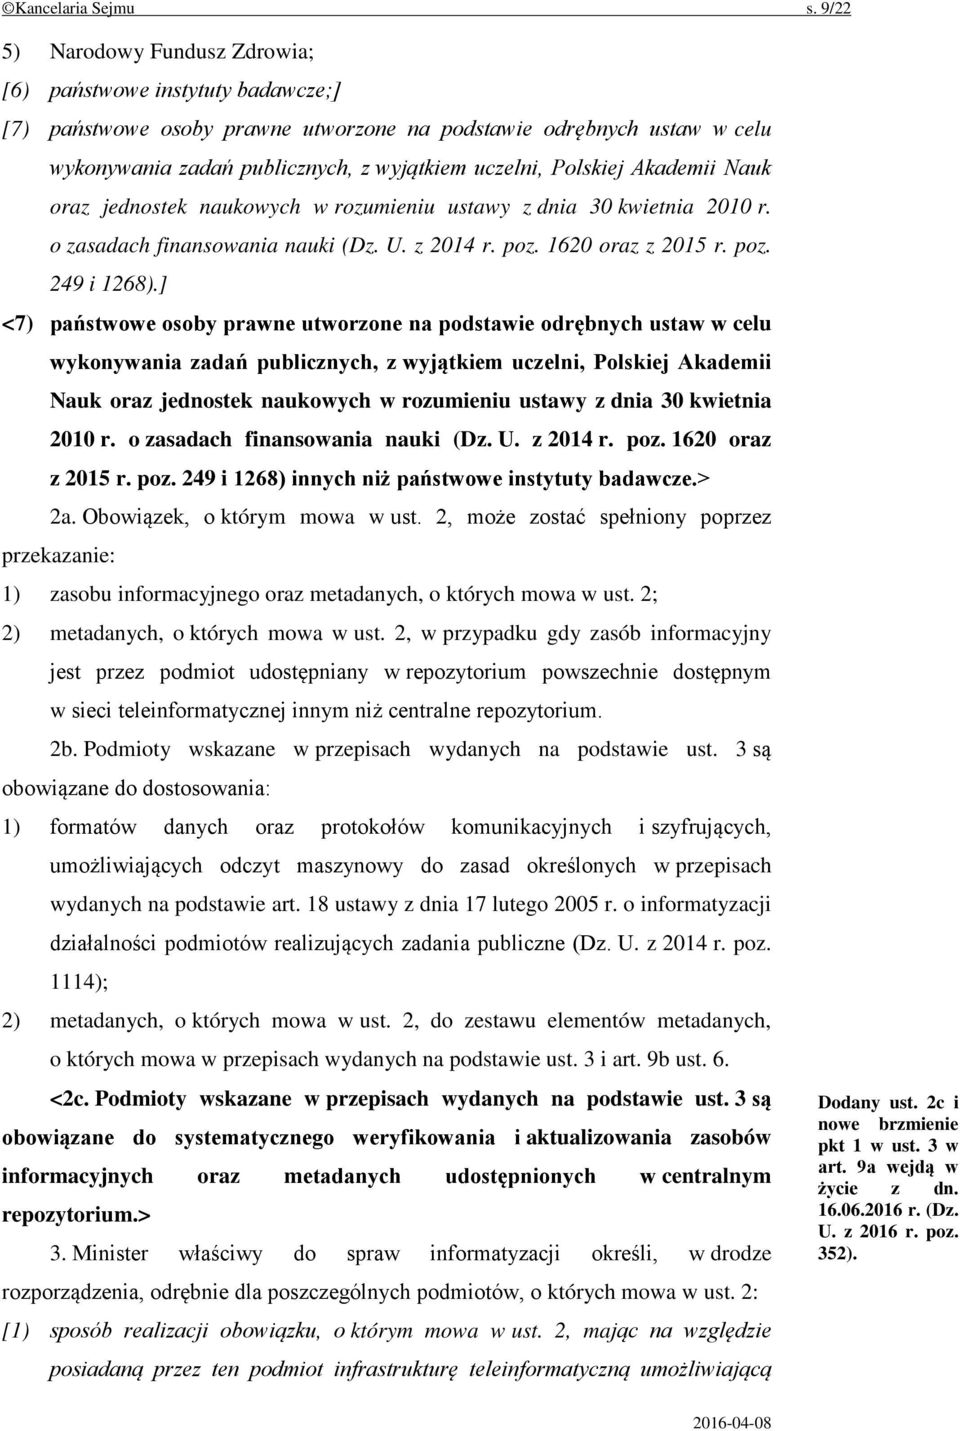 Polskiej Akademii Nauk oraz jednostek naukowych w rozumieniu ustawy z dnia 30 kwietnia 2010 r. o zasadach finansowania nauki (Dz. U. z 2014 r. poz. 1620 oraz z 2015 r. poz. 249 i 1268).